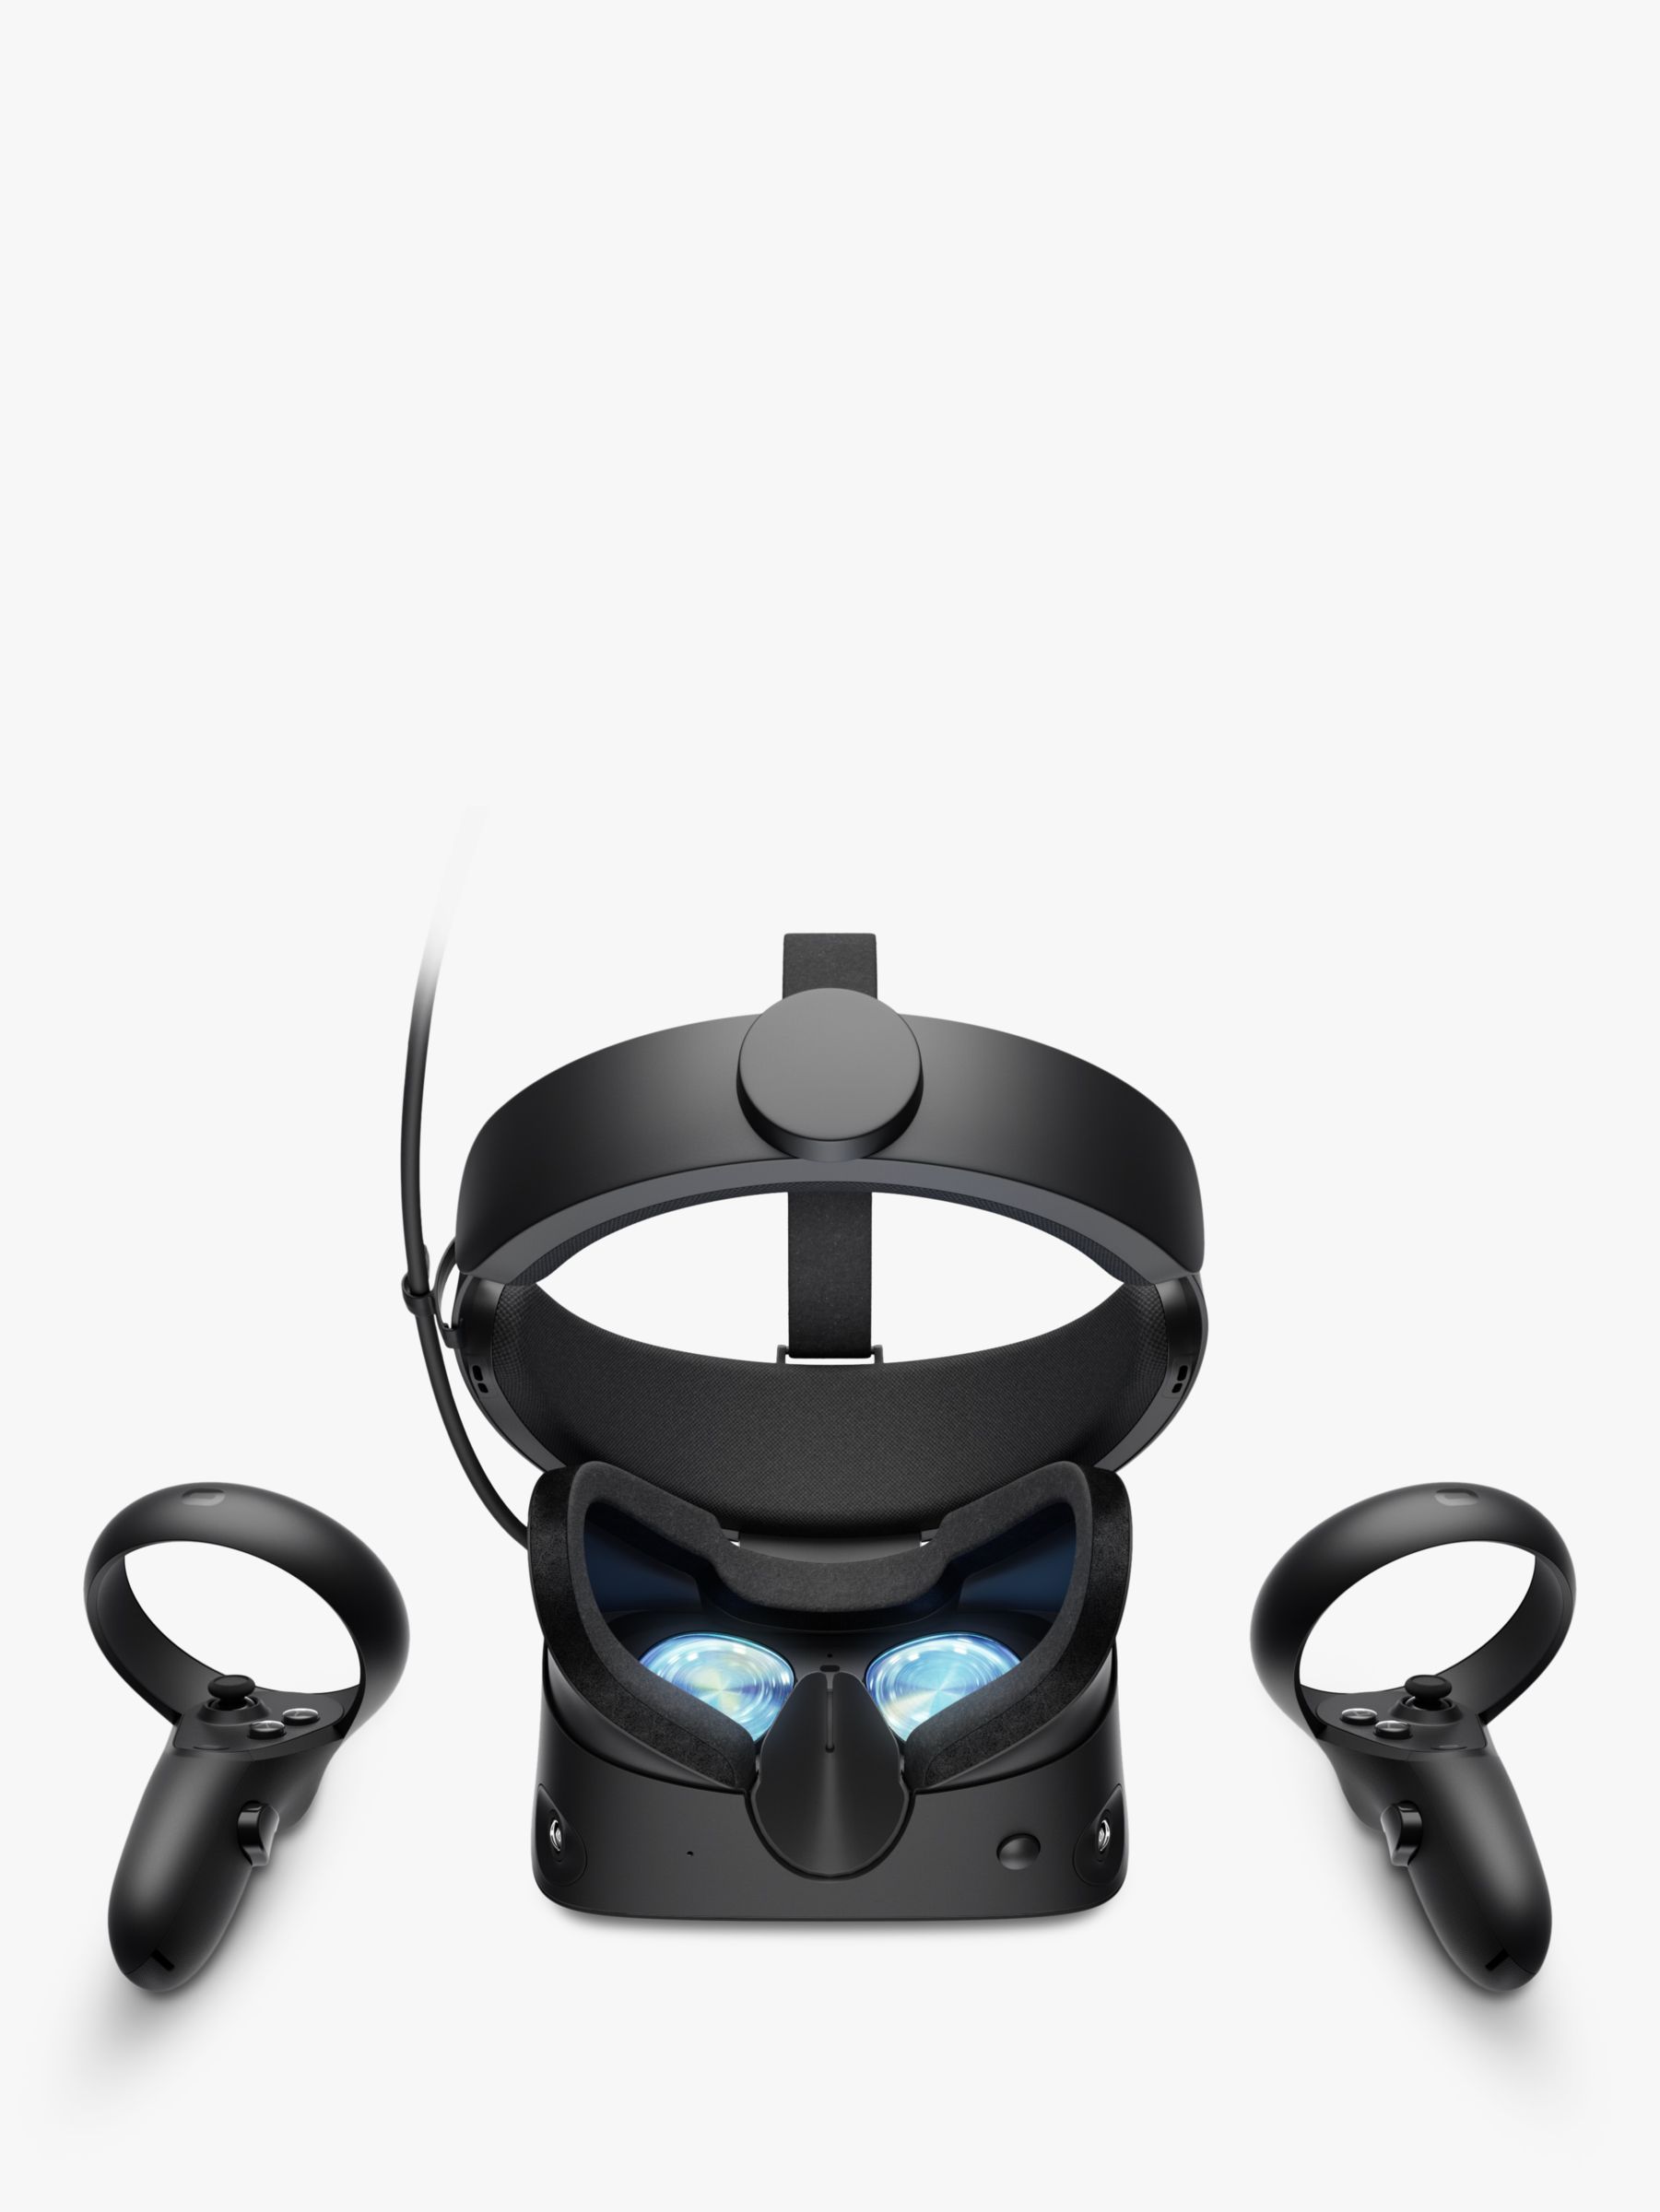 Oculus Rift S Virtual Reality Headset 